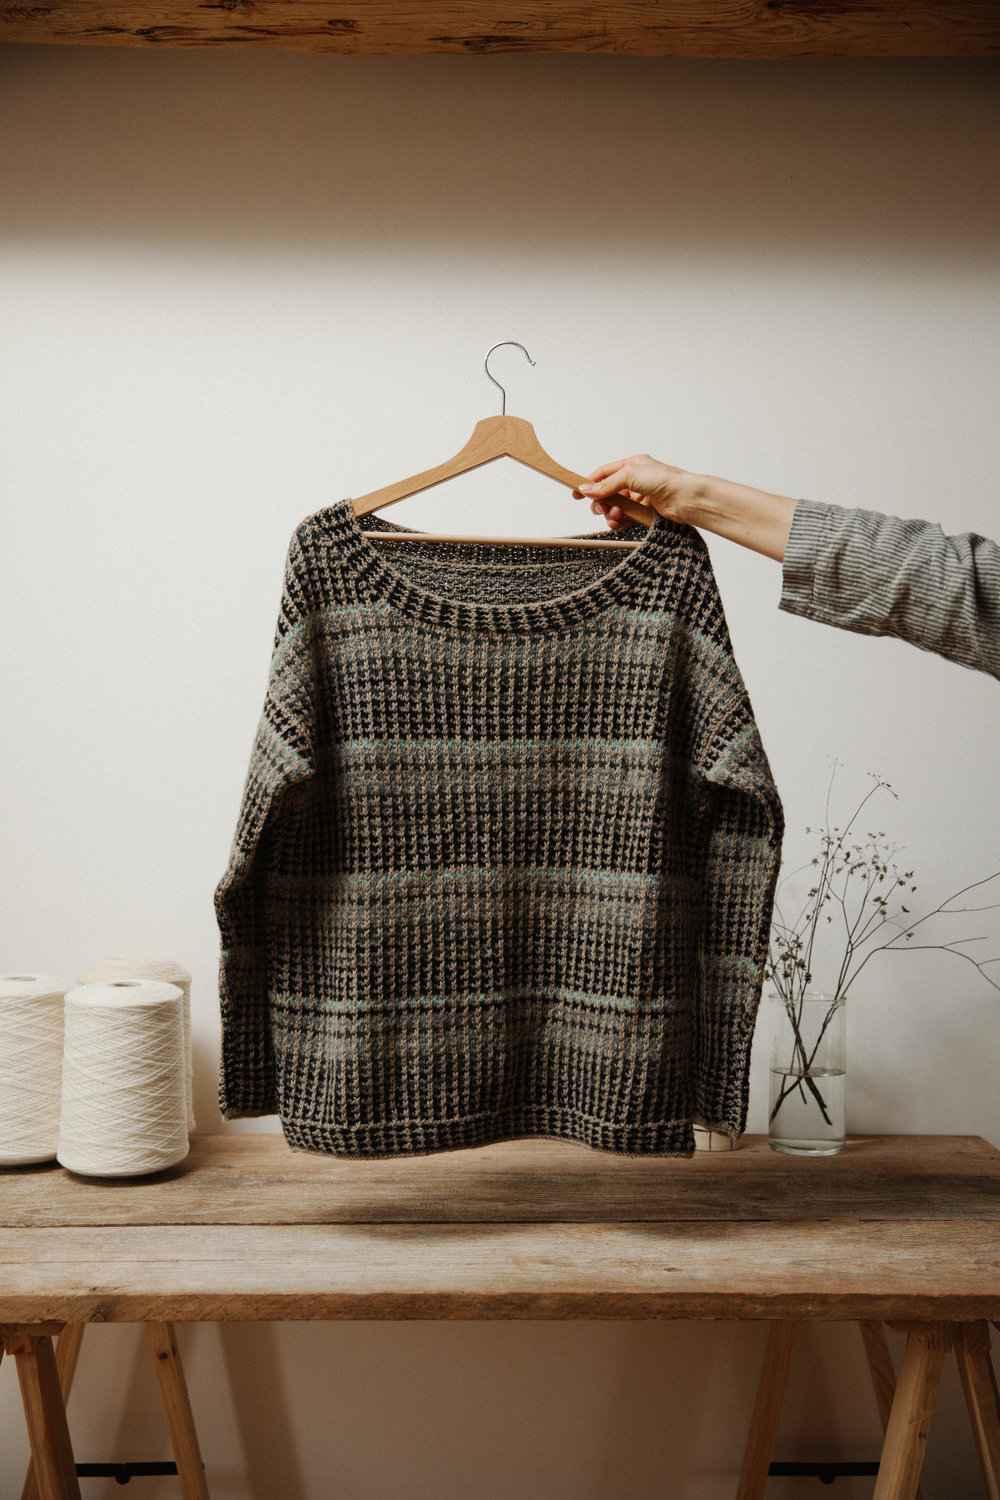 株式会社CRESCE Fynオリジナルデザインのセーターのキット 生地/糸